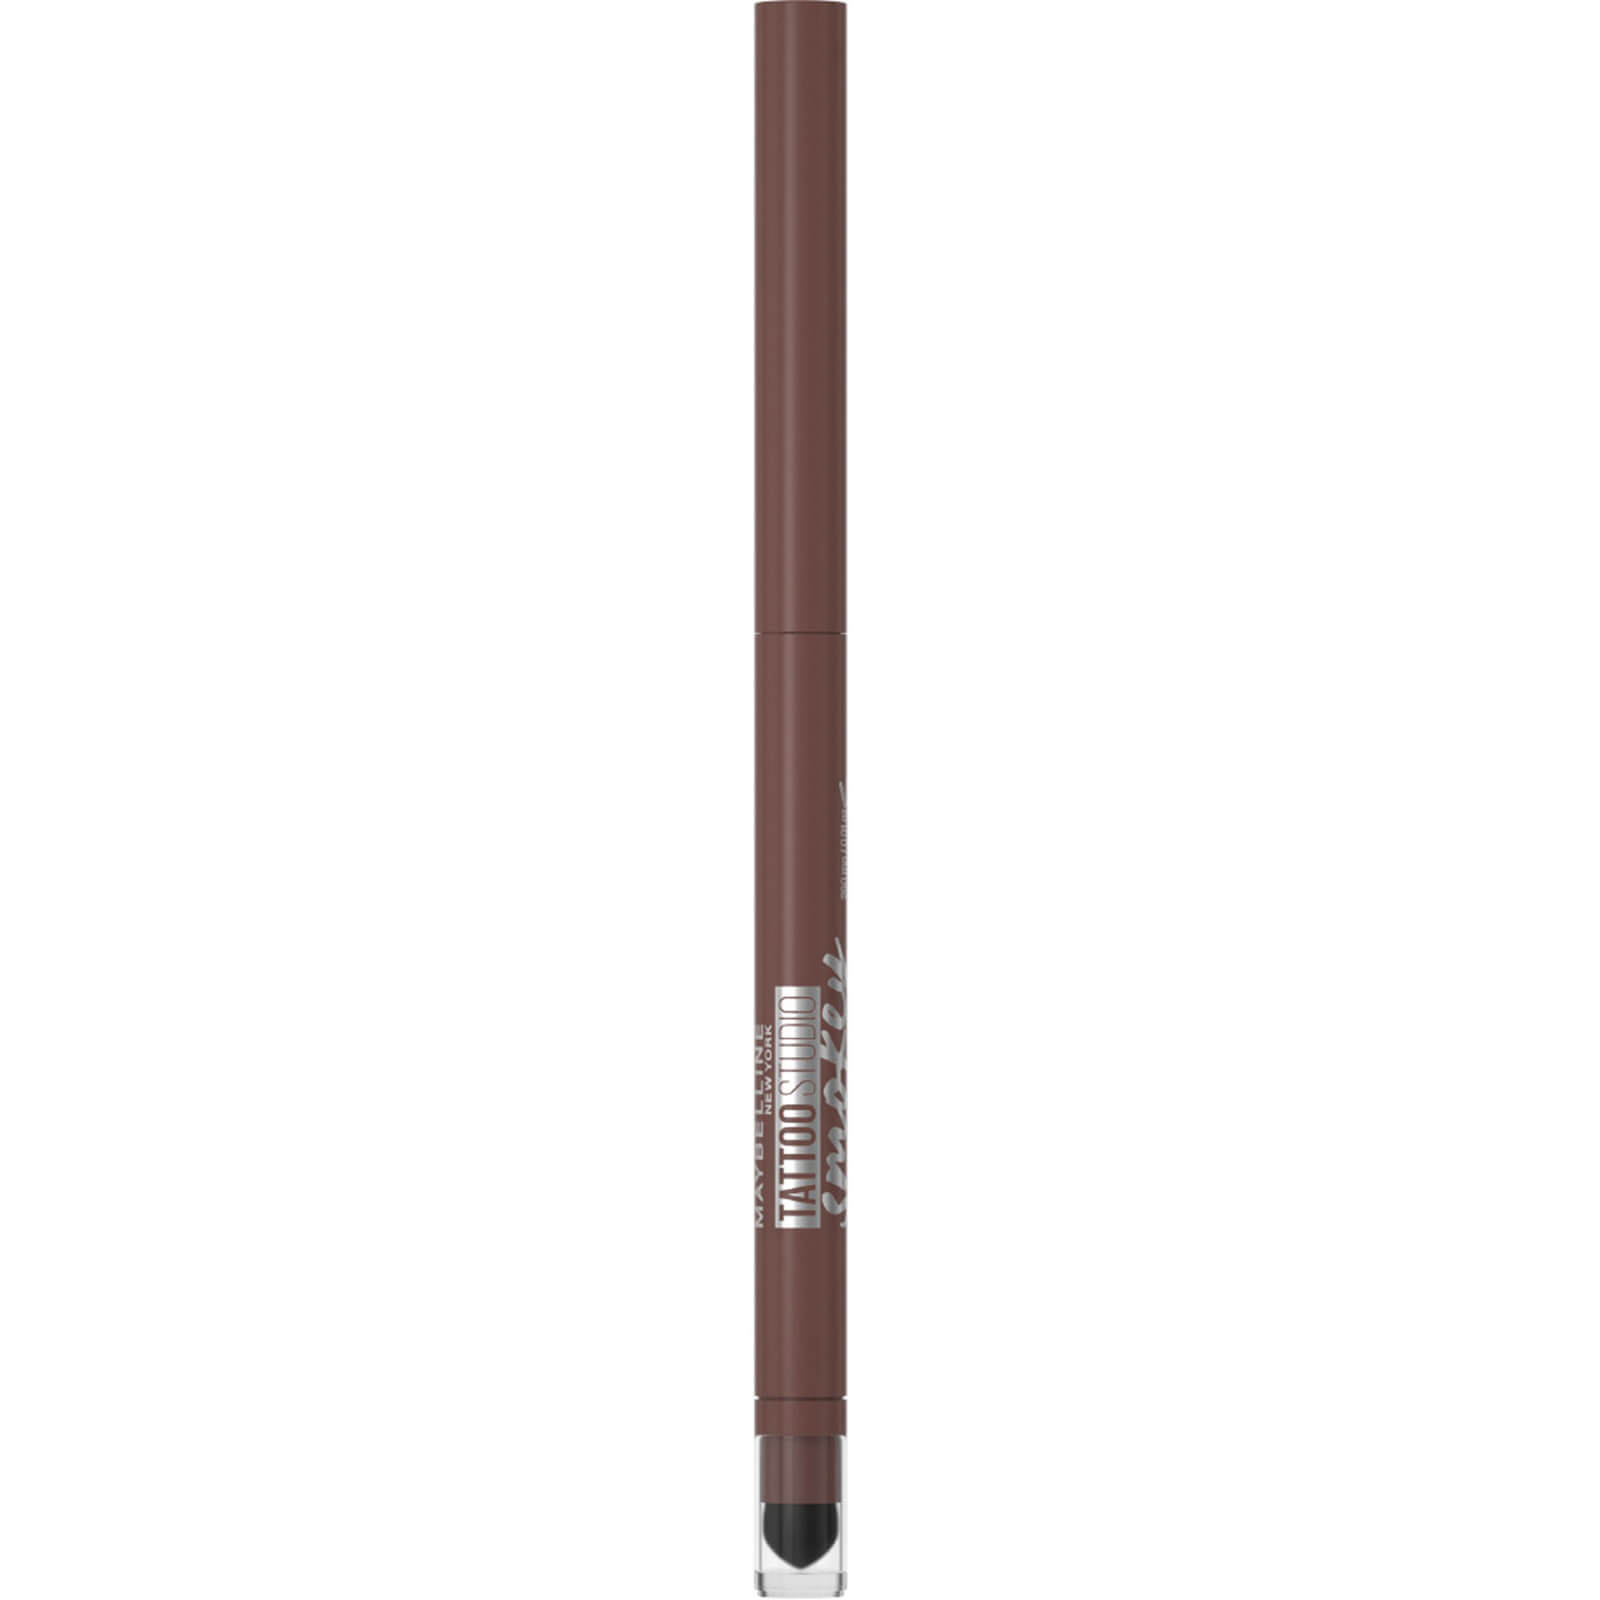 Image of Maybelline Tattoo Liner Smokey Gel Pencil Eye Liner Waterproof 5.12g (Various Shades) - 40 Smokey Brown